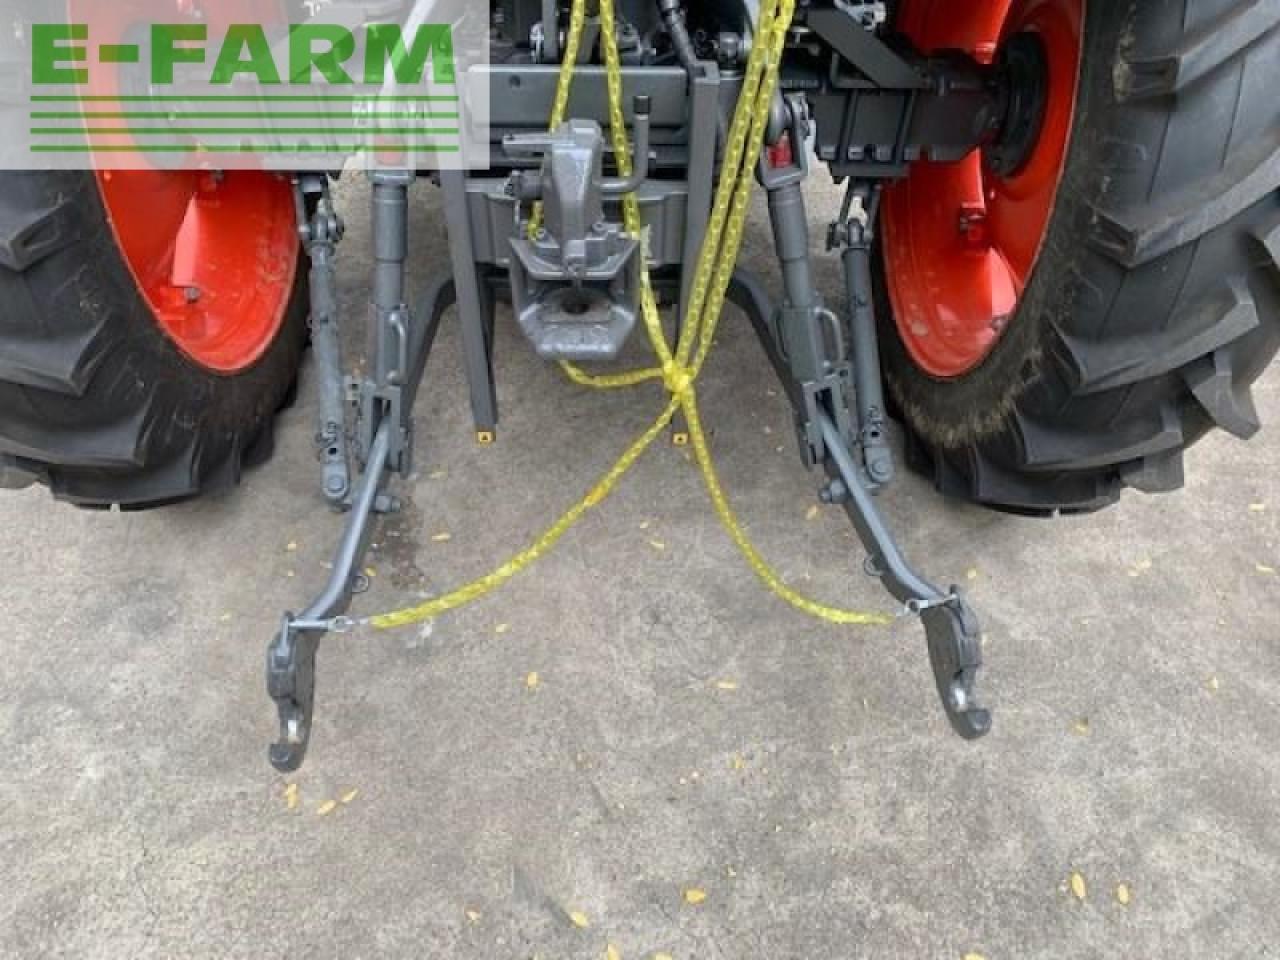 Tracteur agricole CLAAS elios 210